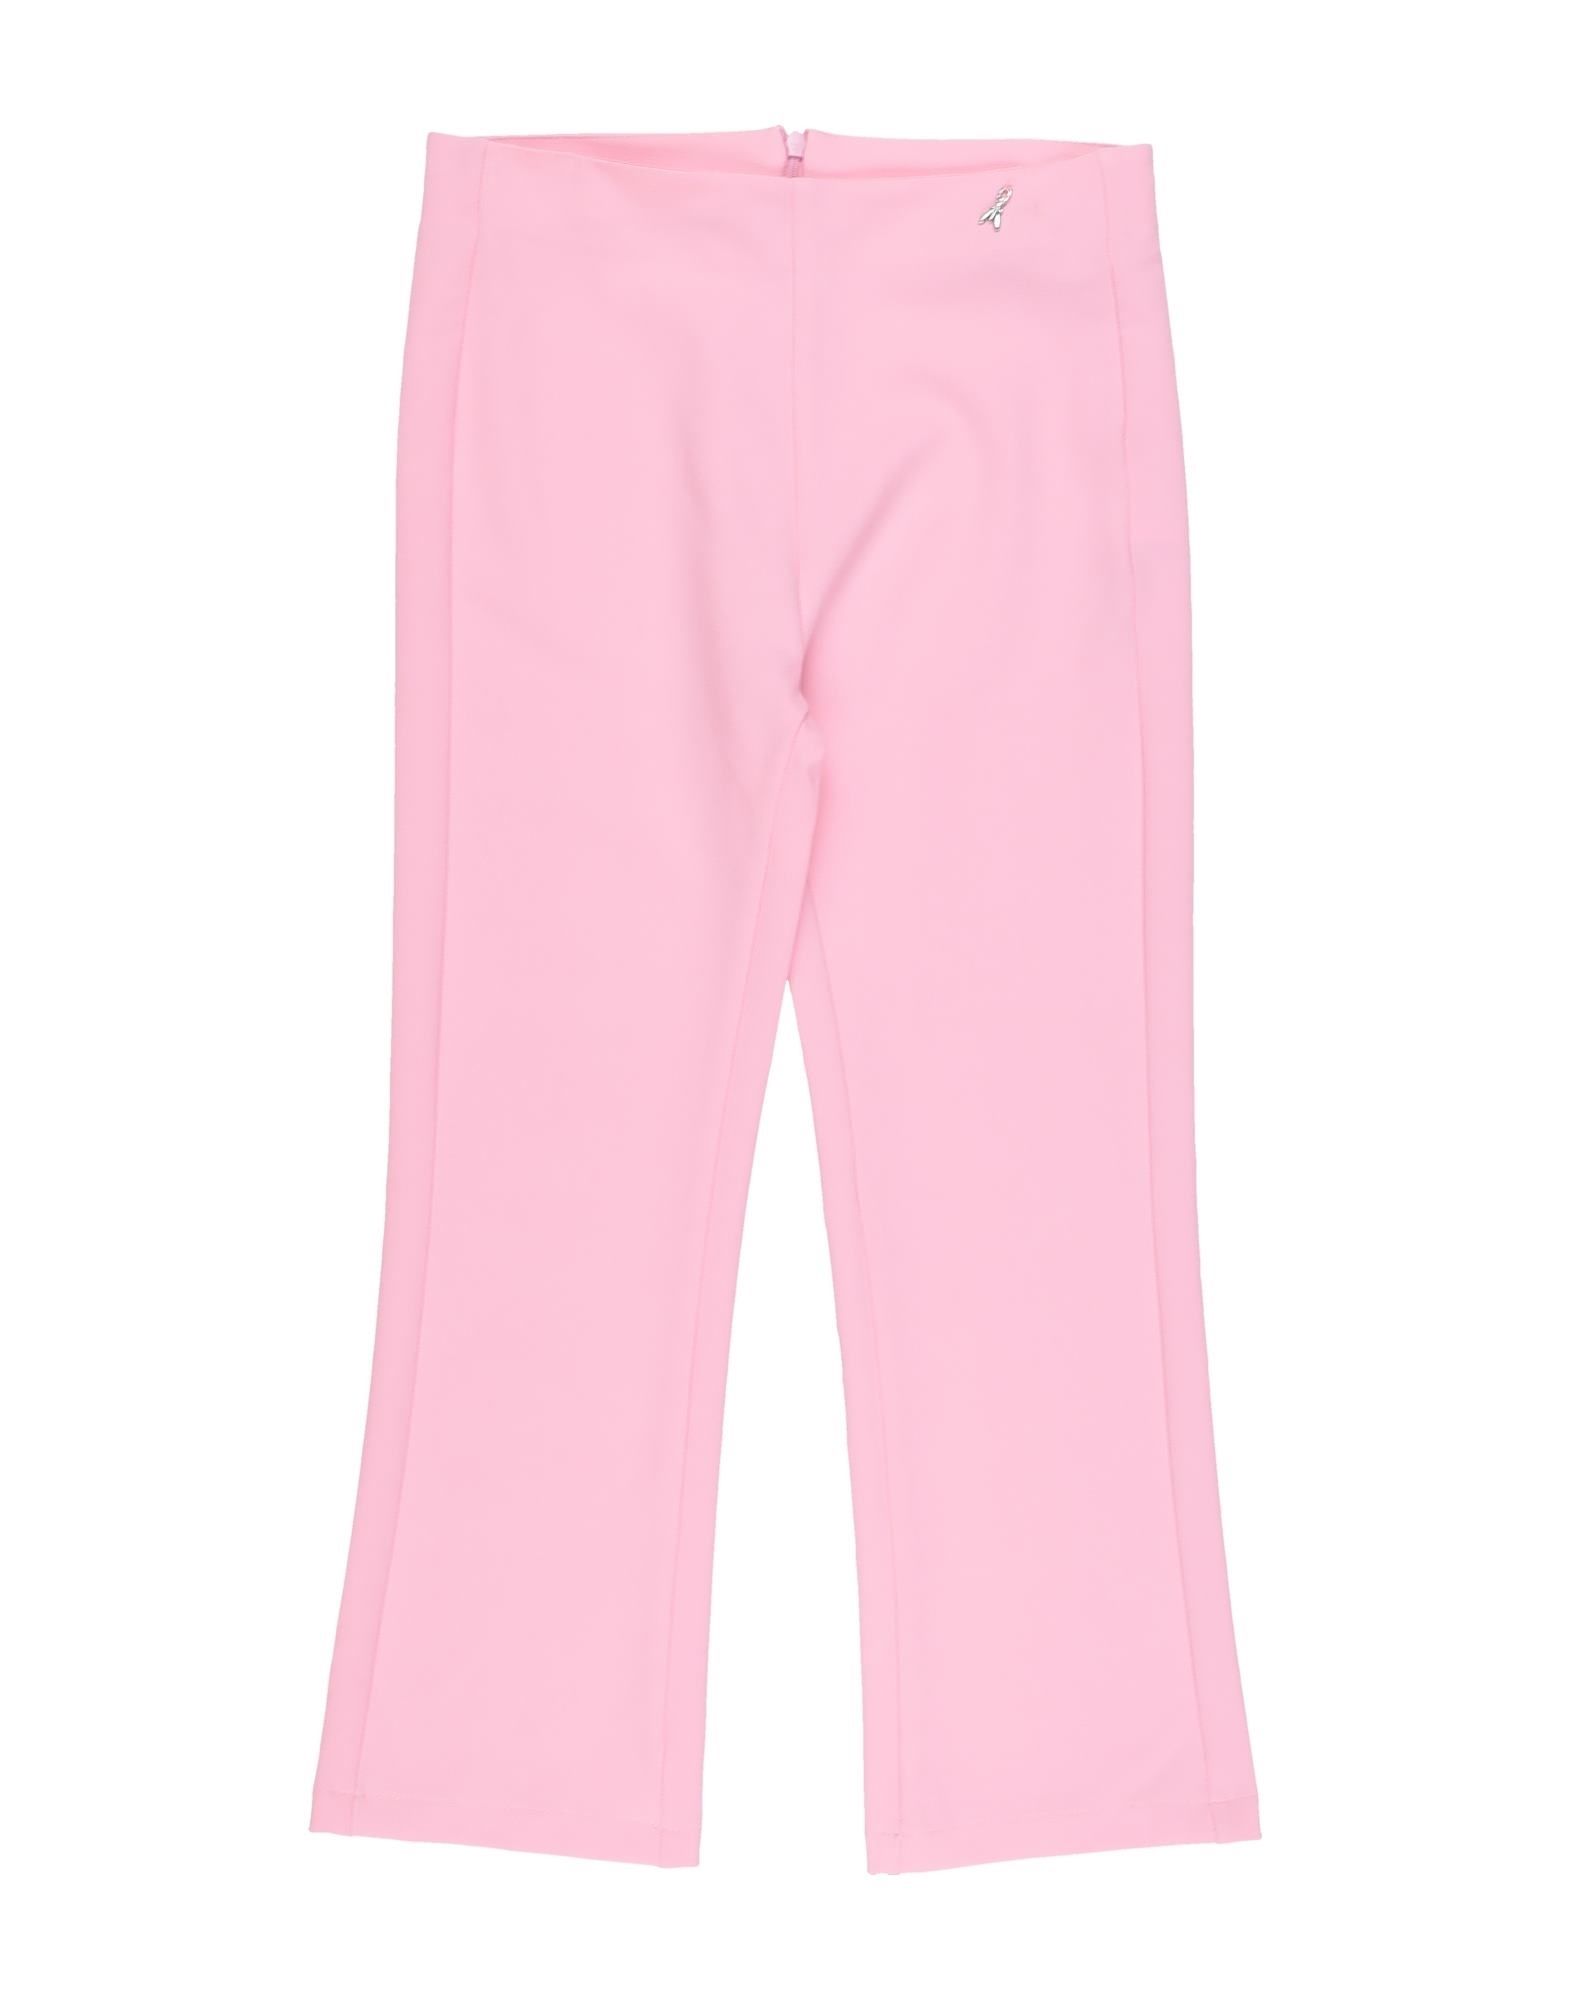 Patrizia Pepe Kids' Pants In Pink